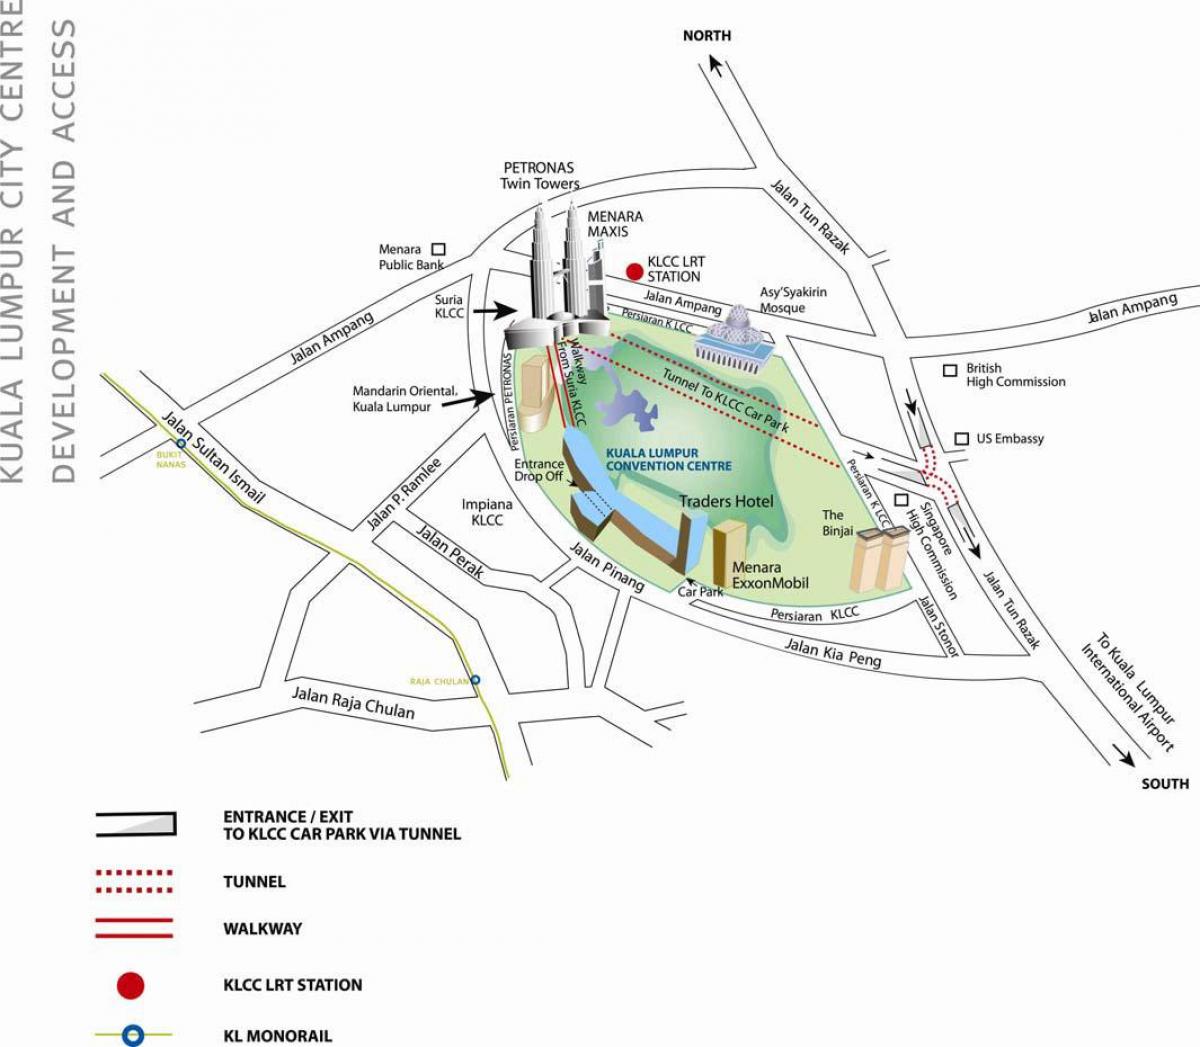 Kaart van kuala lumpur konvensie sentrum